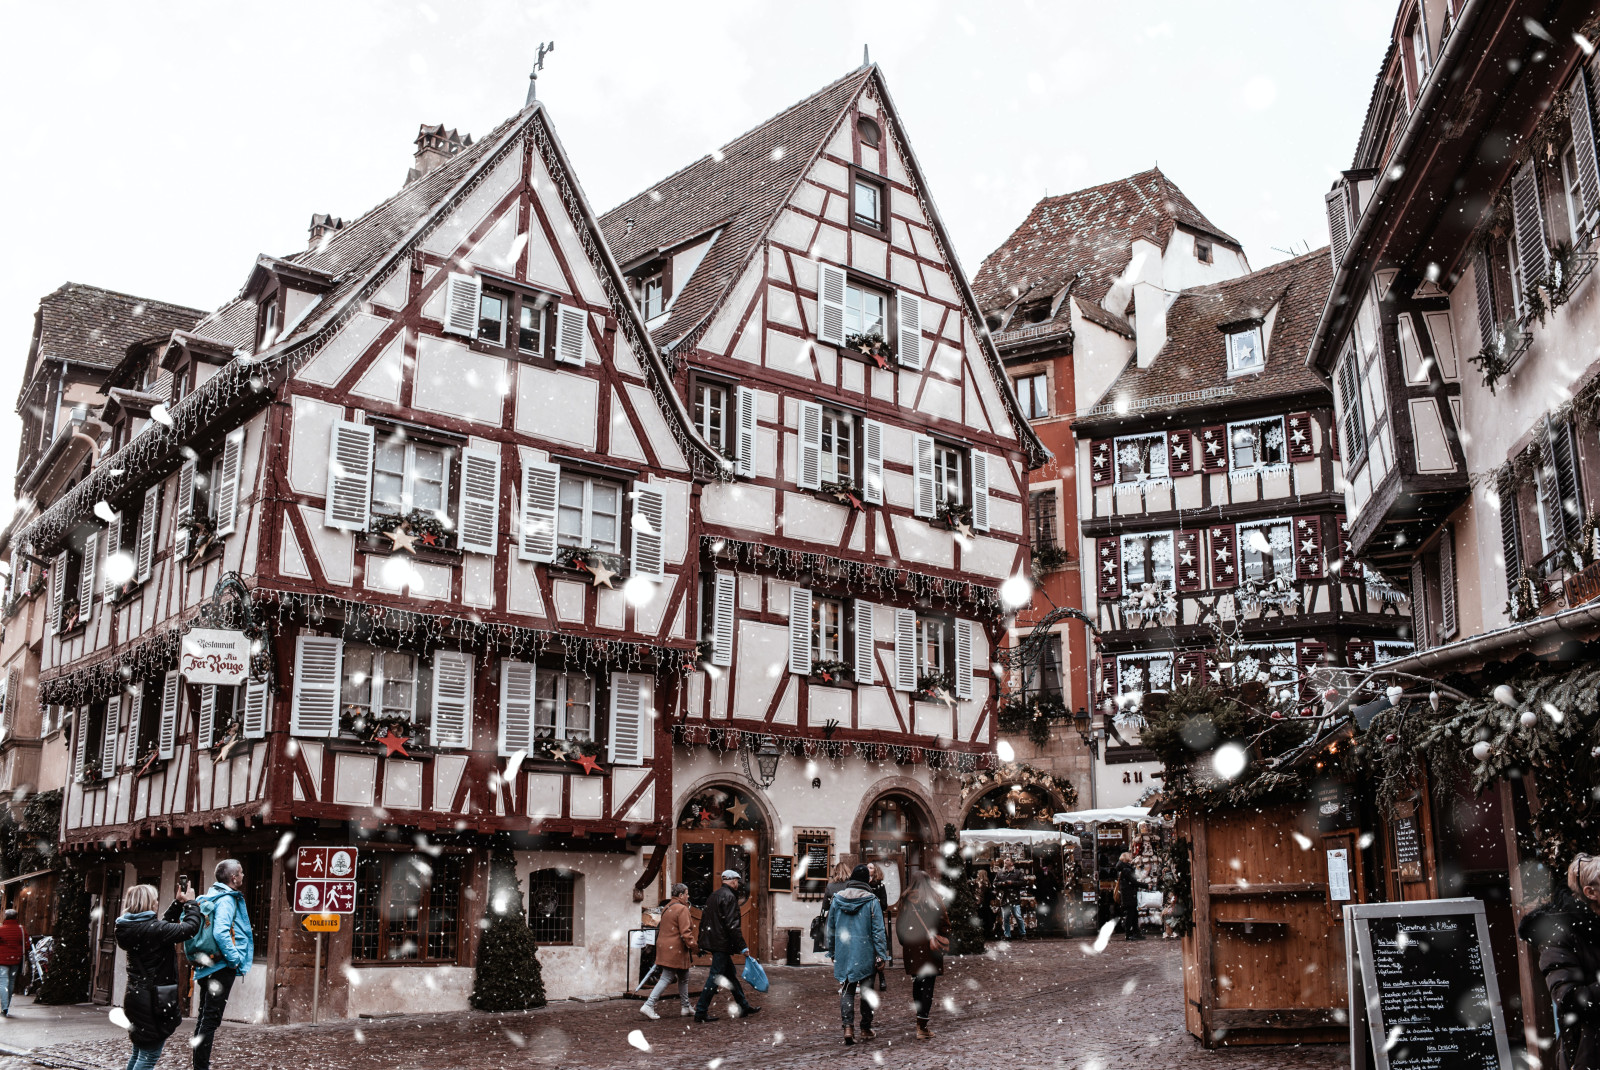 Strasbourg travel guide. 